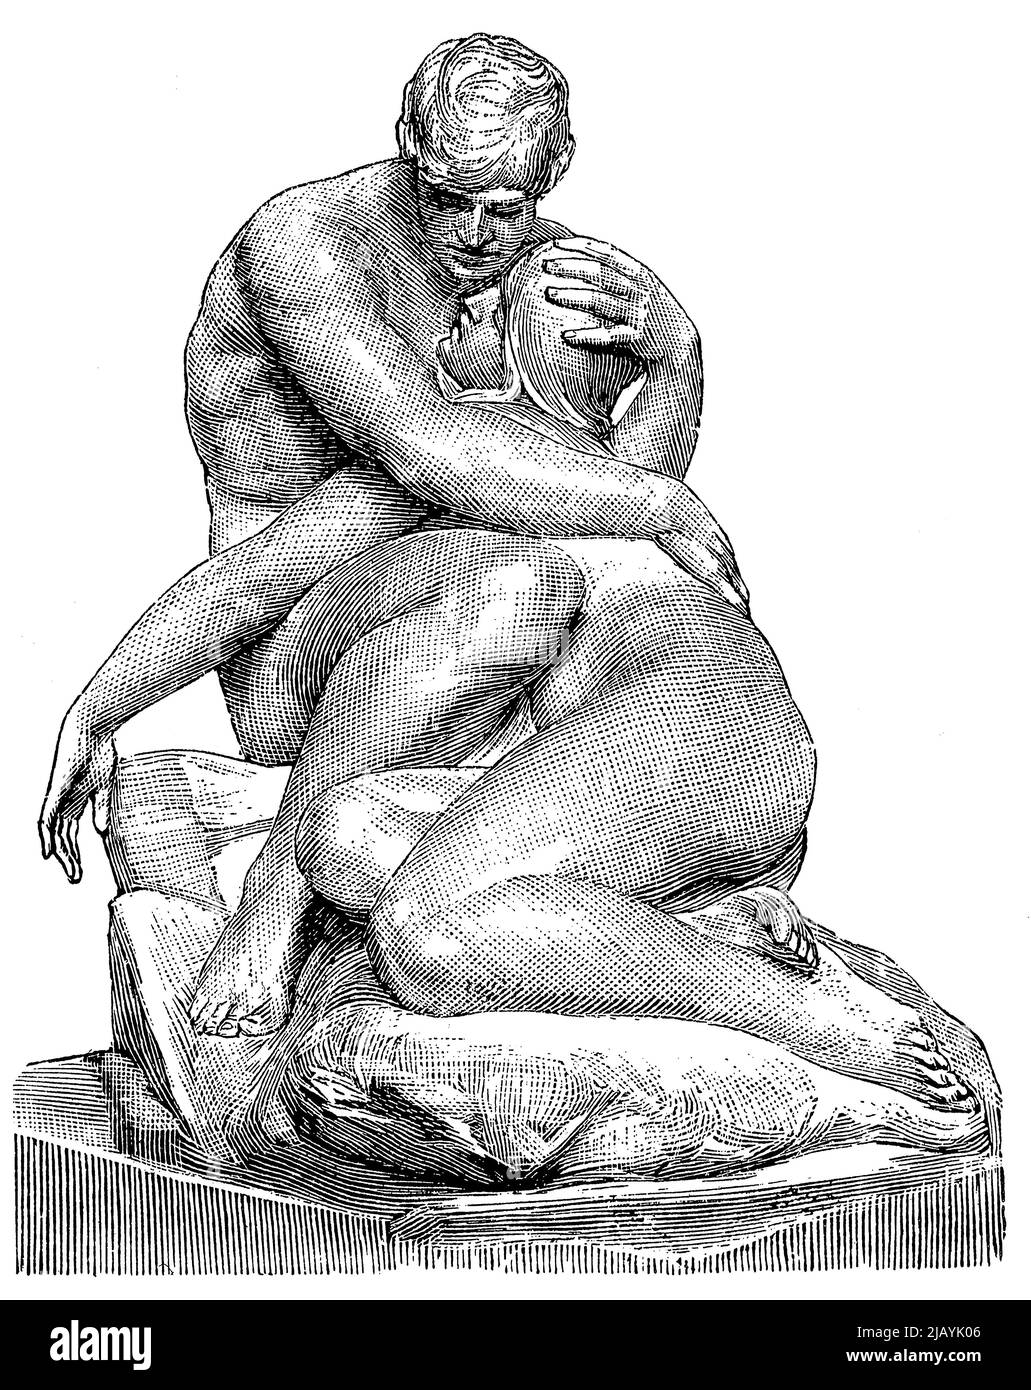 Skulptur von Adam und Eva von einem deutschen Bildhauer Peter Breuer. Veröffentlichung des Buches 'Meyers Konversations-Lexikon', Band 2, Leipzig, Deutschland, 1910 Stockfoto